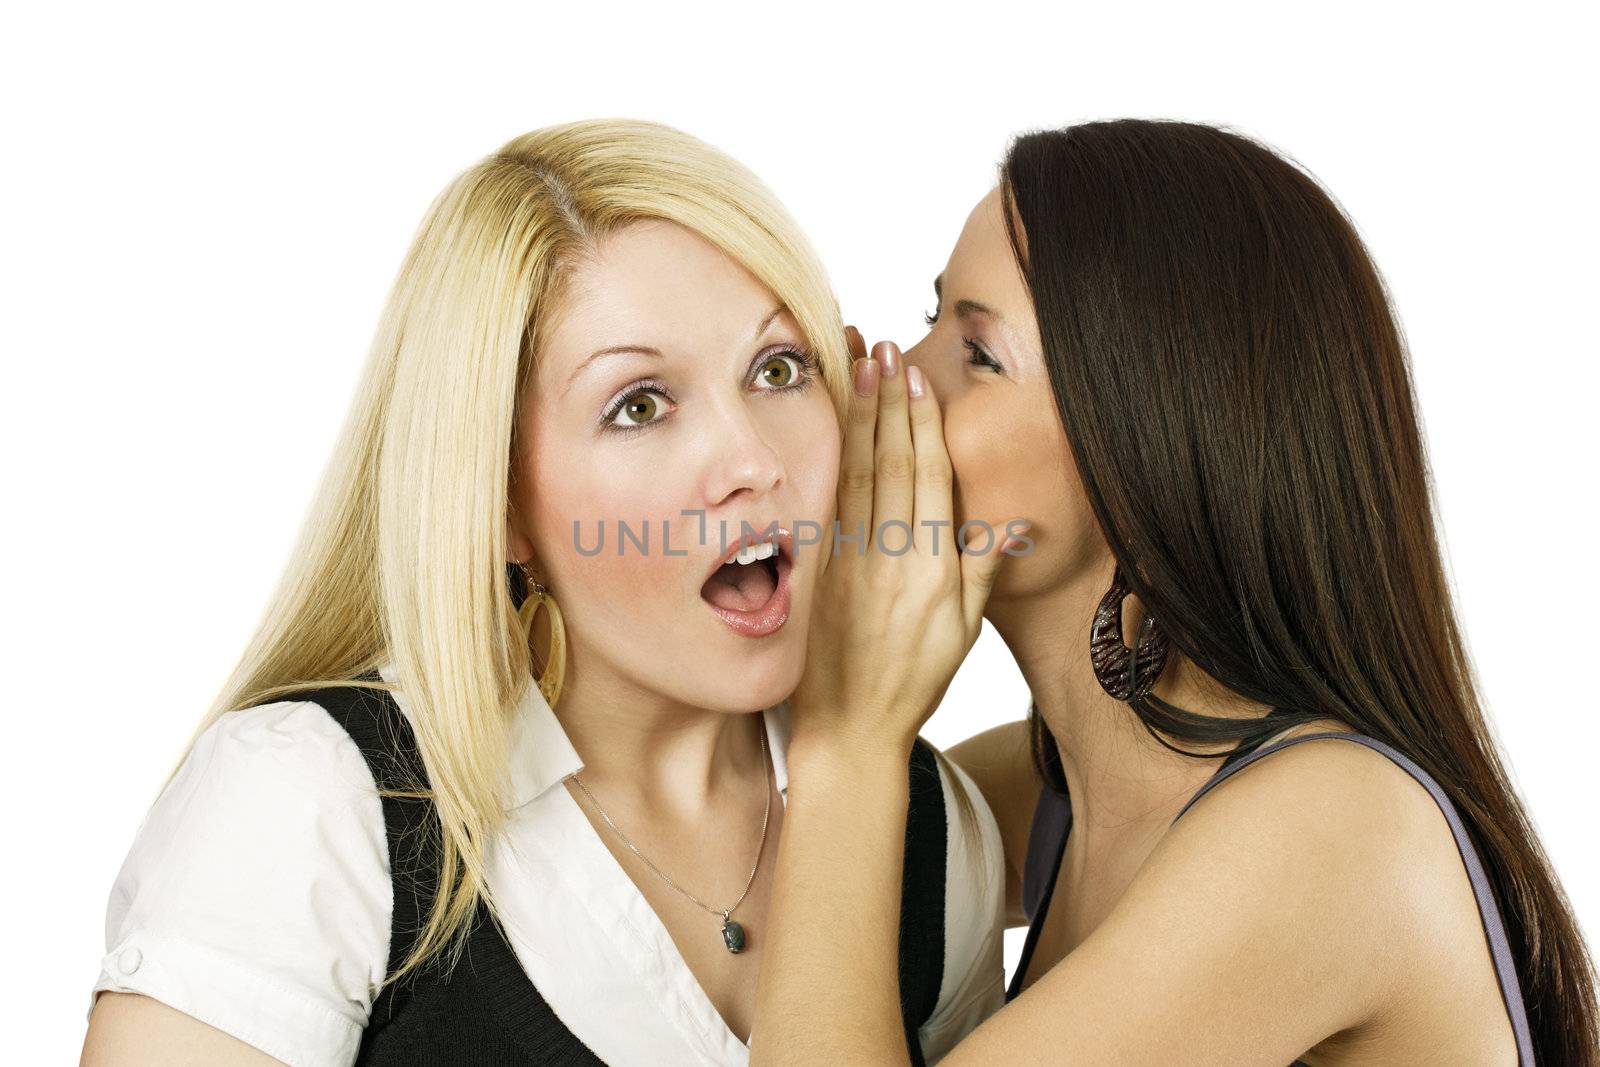 Two women whispering secrets by sumners